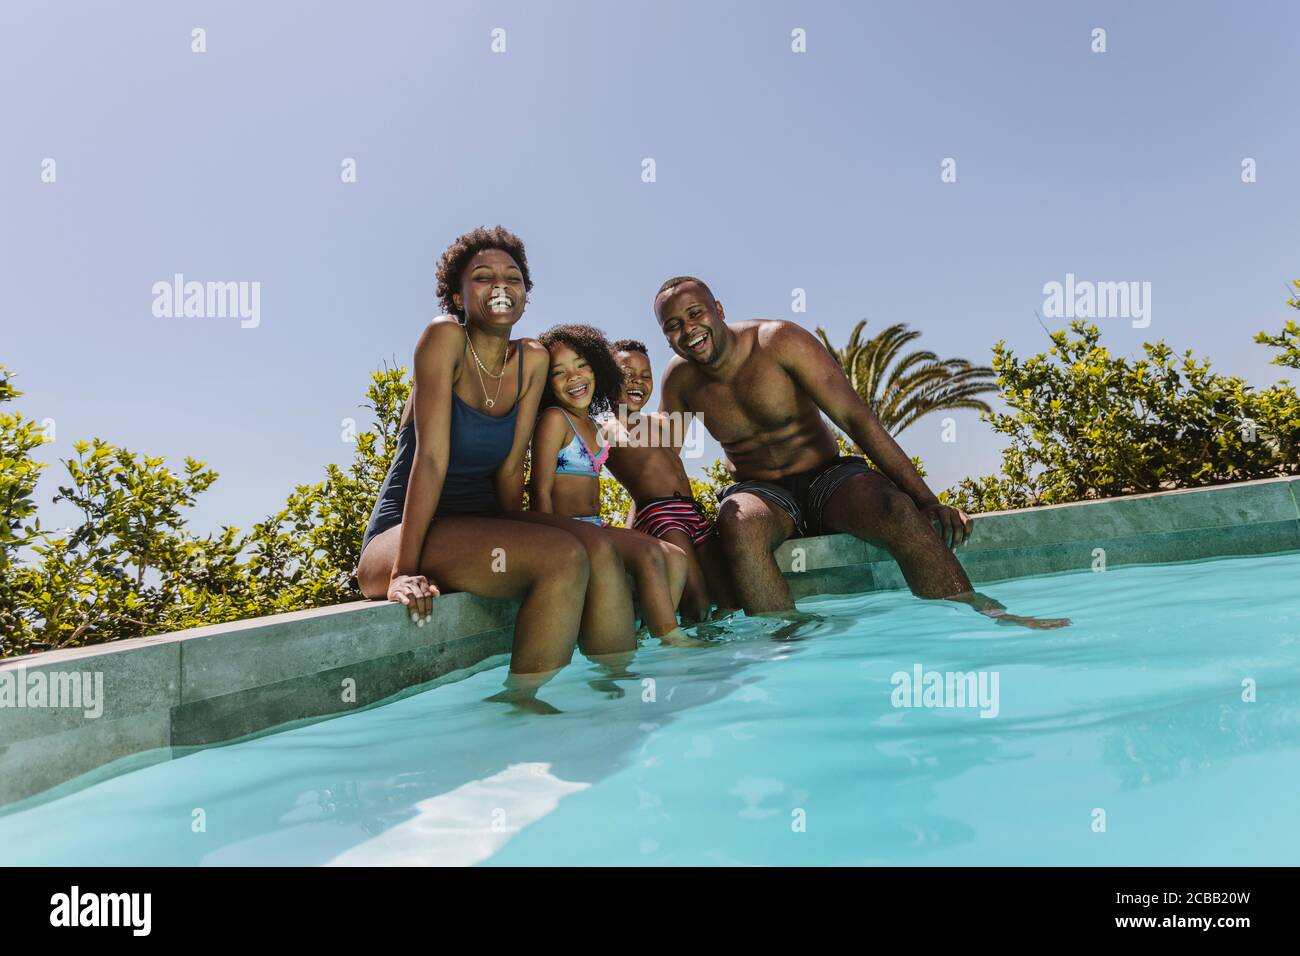 Feliz familia joven sentada en el borde de la piscina. Familia joven disfrutando de sus vacaciones de verano. Foto de stock